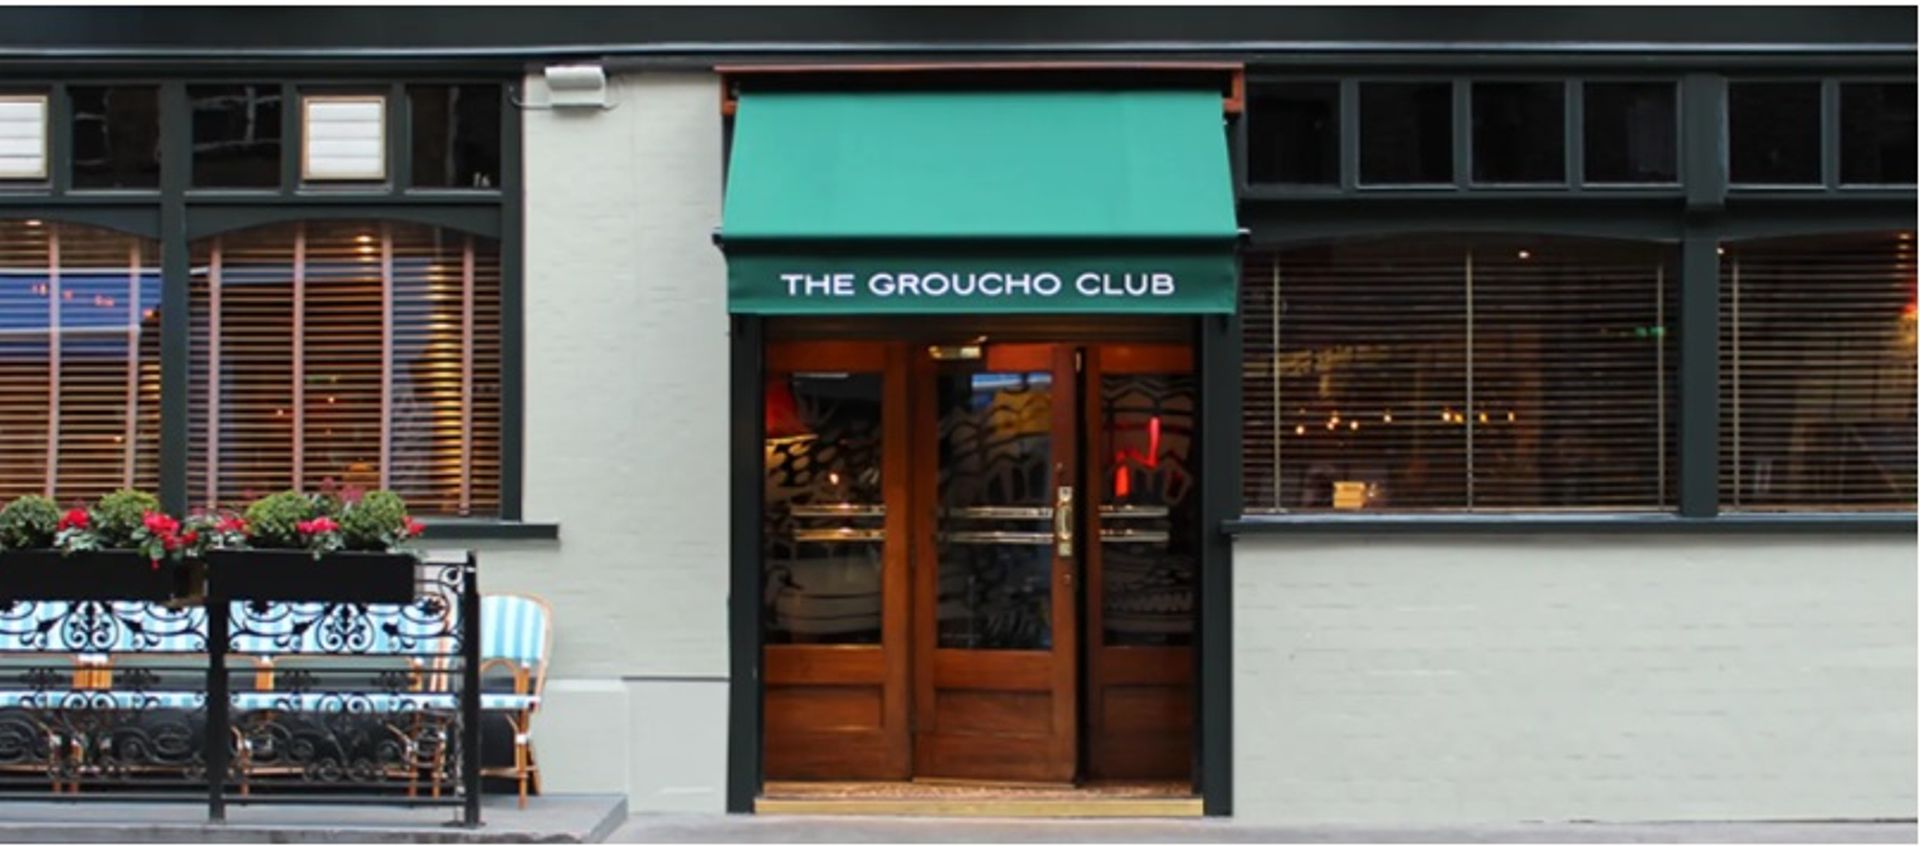 מועדון גראוצ'ו, לונדון

באדיבות Groucho Club